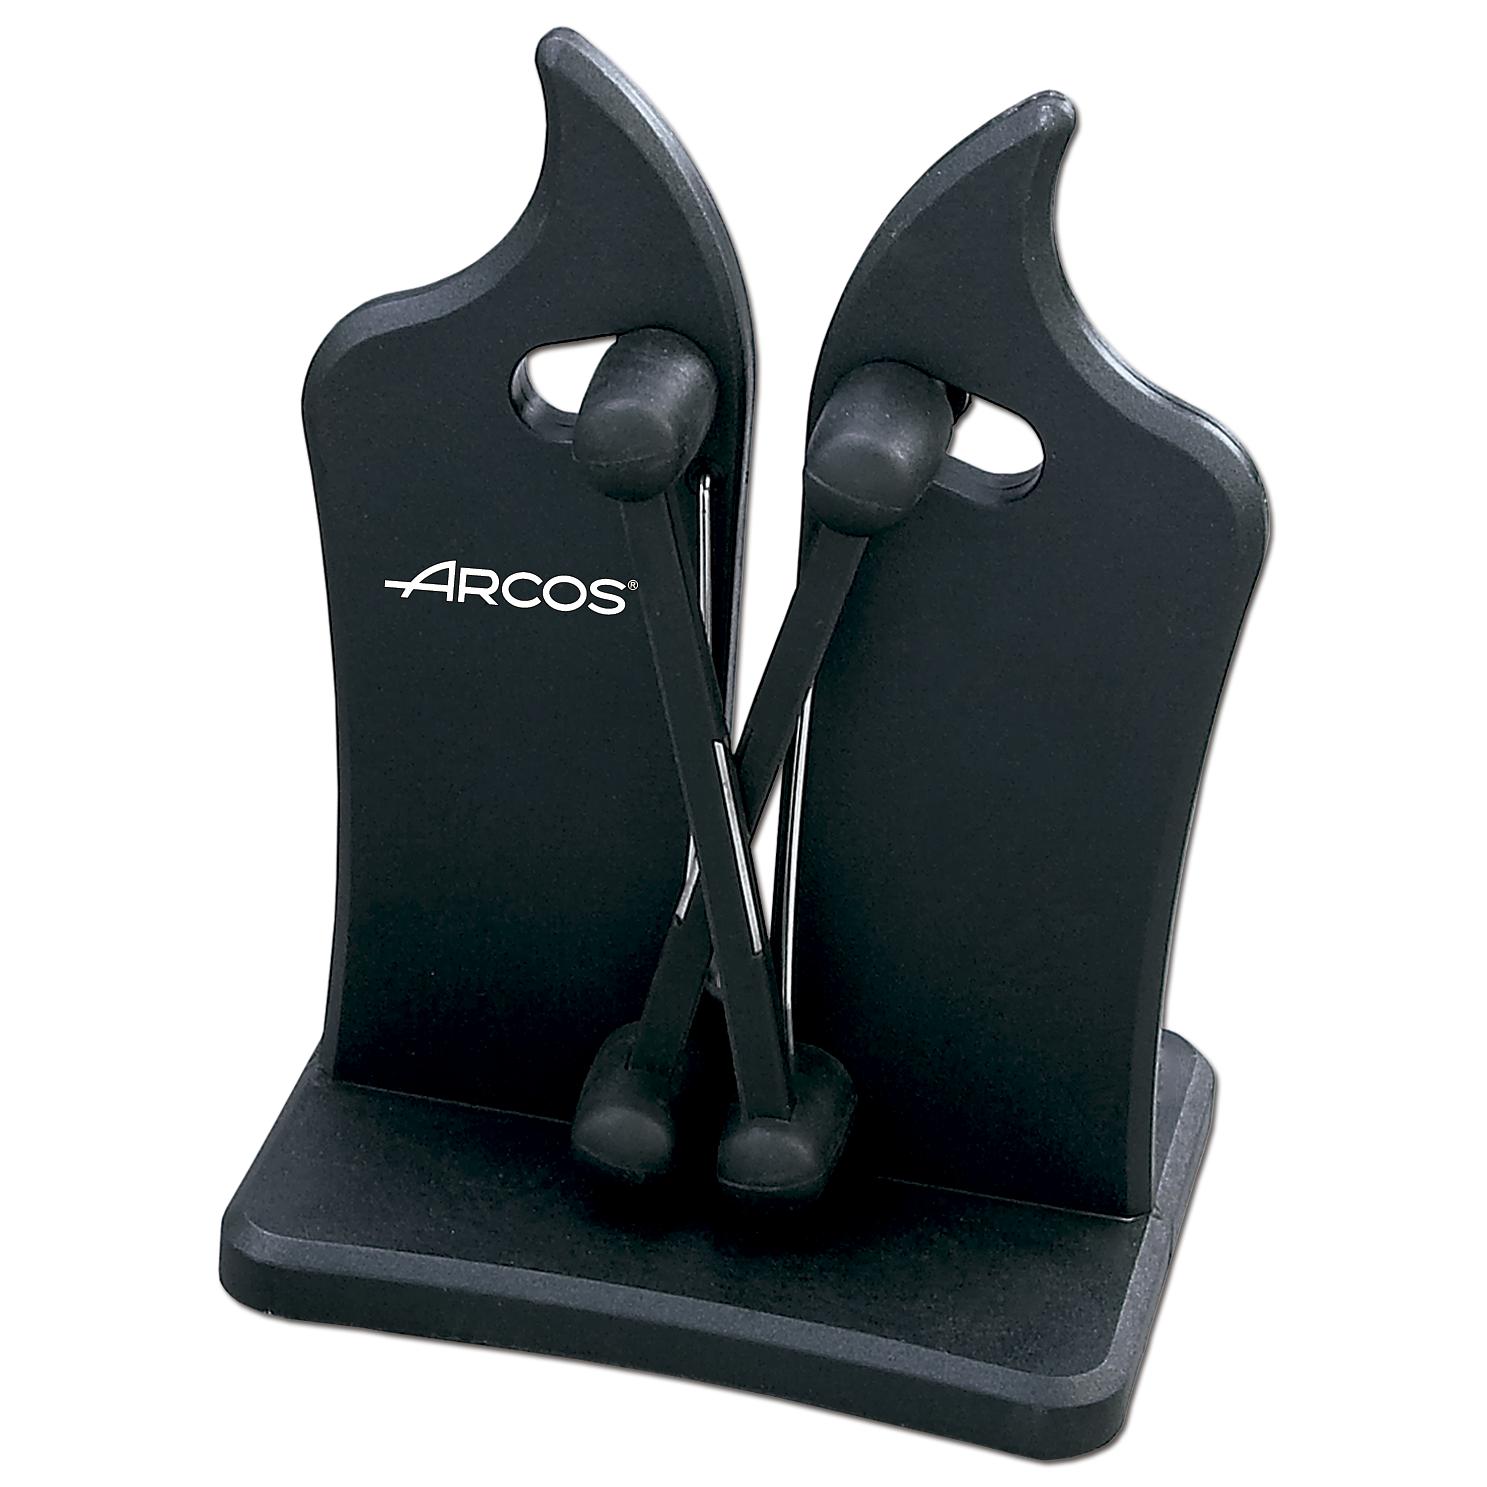 Arcos - Arcos Afiladores - Afilador Profesional de Cuchillos - Hecho de ABS Color Negro